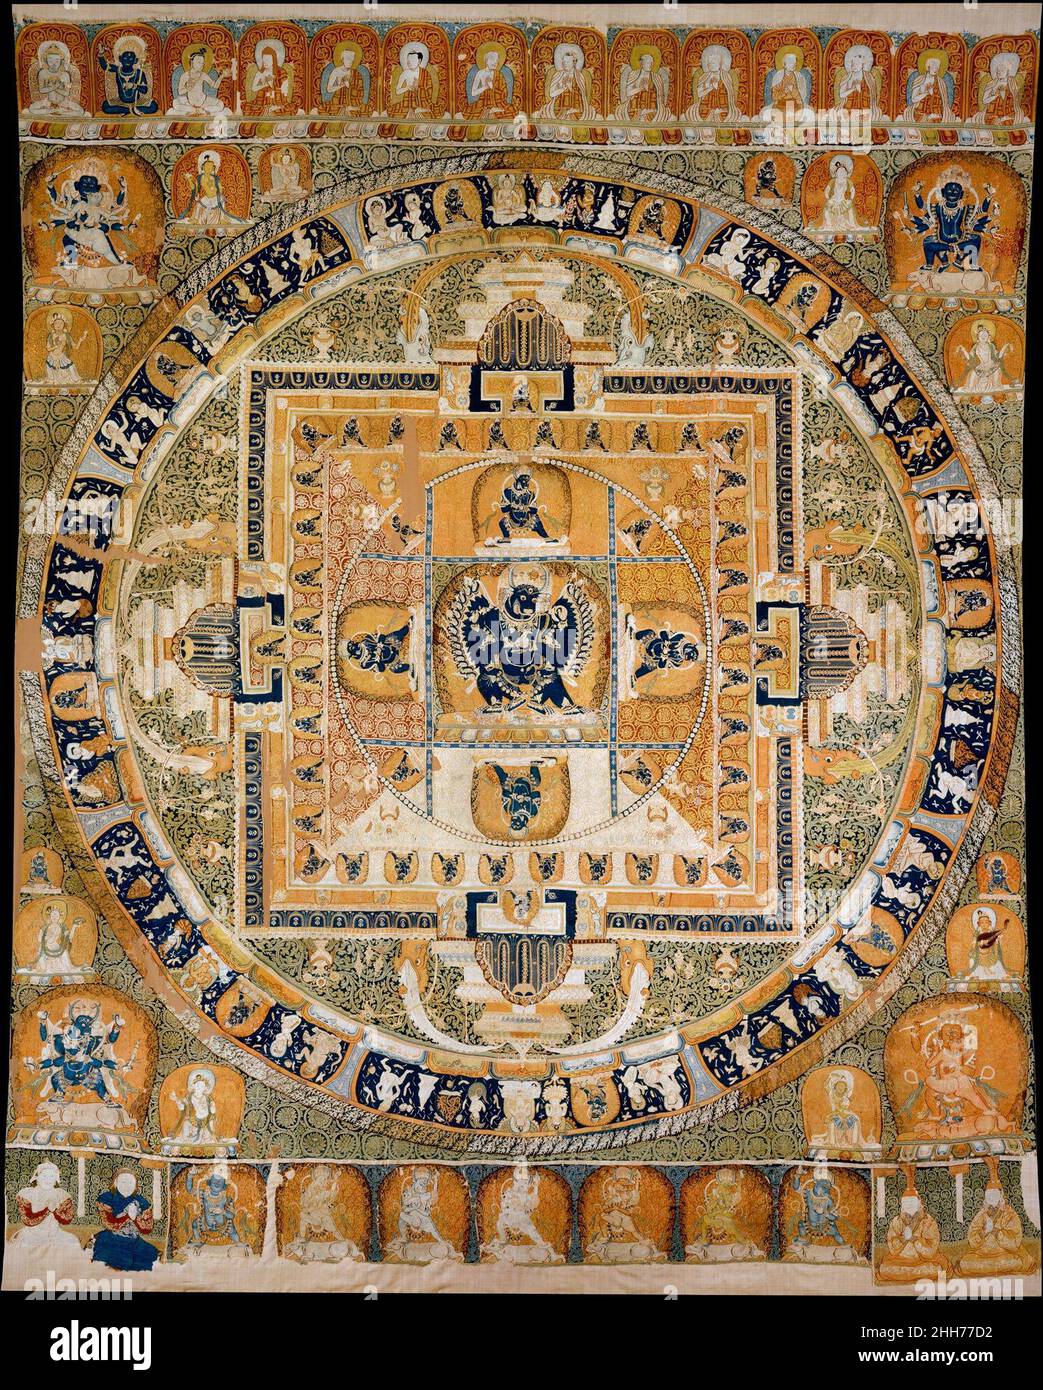 Vajrabhairava mandala ca.1330–32 Chine au XIVe siècle, la Chine est gouvernée par la dynastie mongol Yuan, établie par Khubilai Khan (1215–1294), petit-fils de Gengis Khan (1162–1227).Les dirigeants mongoles étaient des adeptes du bouddhisme tibétain, et ils étaient aussi des patrons somptueux des arts de luxe, y compris de somptueux textiles tissés en soie.C'est un exemple du type de textile le plus sophistiqué, kesi, dans lequel chaque fil de couleur est tissé individuellement pour former une image.Le point central est la déité féroce Vajrabhairava, le conquérant de la mort à tête de buffle, à la peau bleue, un foyer de dévotion pour t Banque D'Images